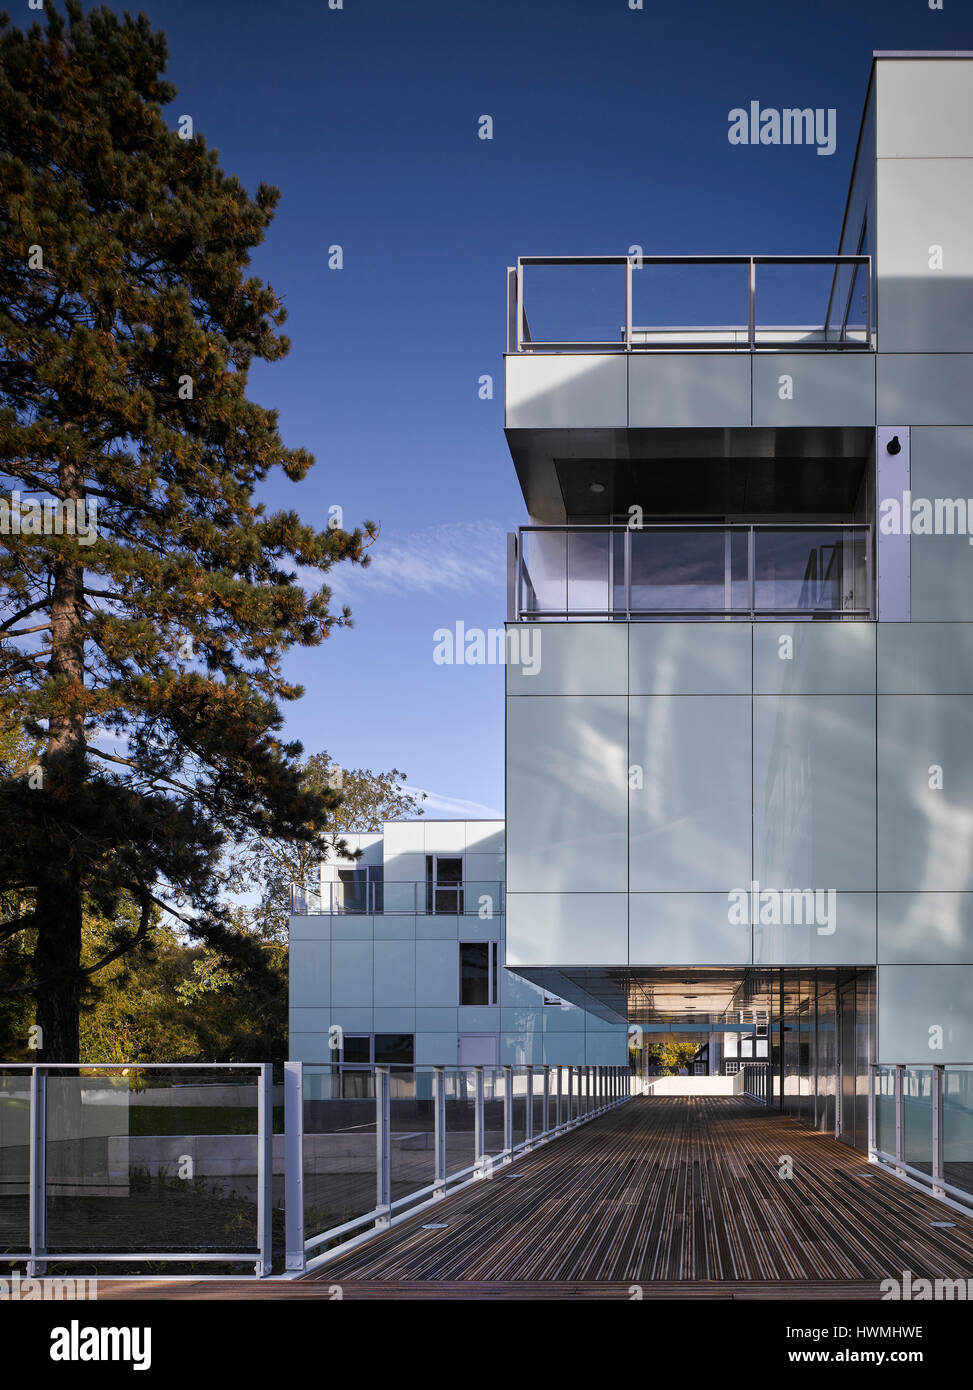 Außenansicht der Gehweg mit Überhang. Dunluce Apartments, Ballsbridge, Irland. Architekt: Derek Tynan Architekten, 2016. Stockfoto